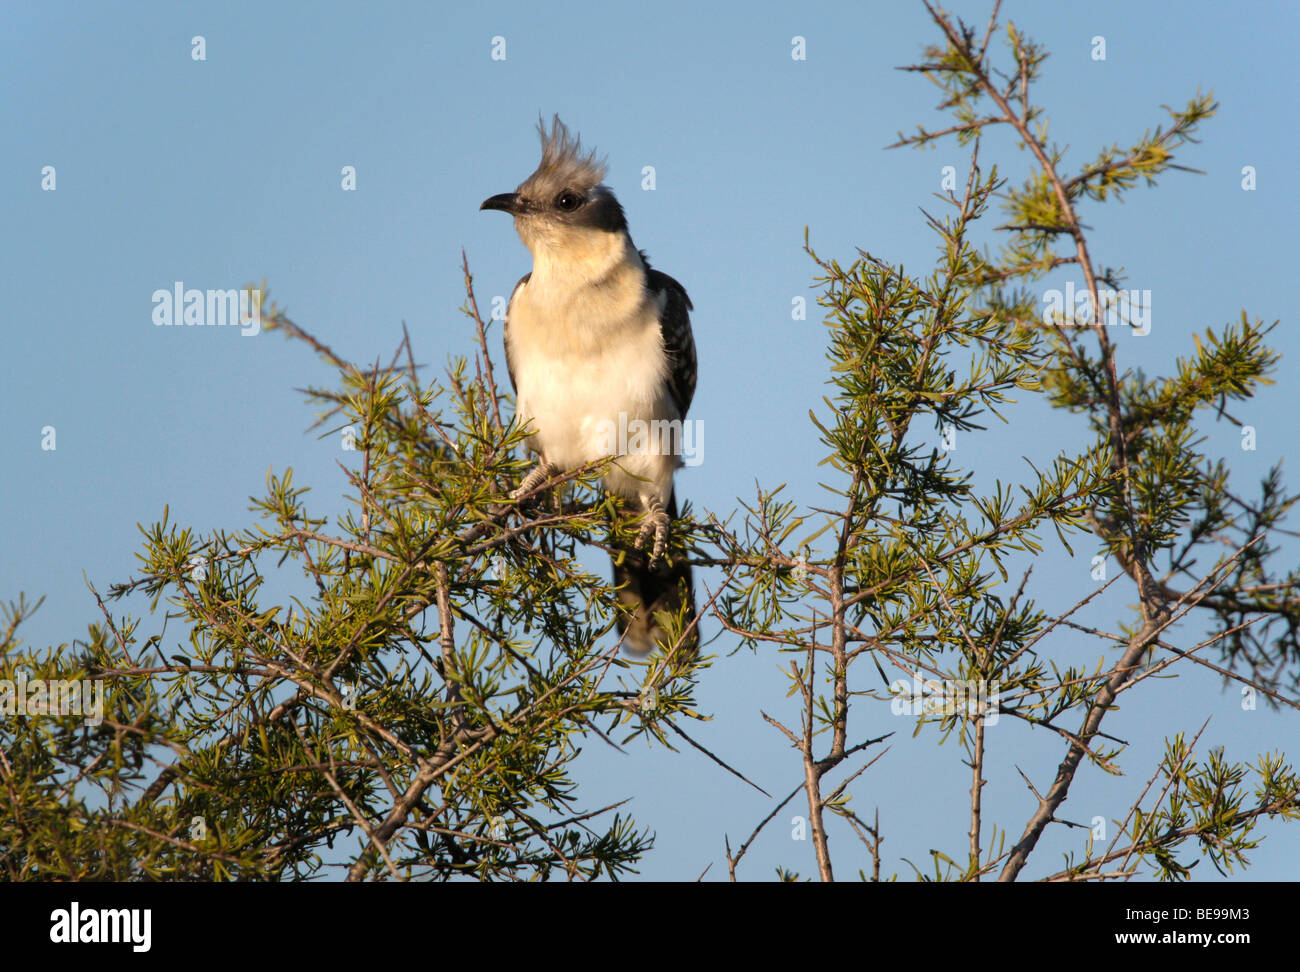 Een kuifkoekoek zittend in de top van een struik op de uitkijk. A watching Great Spotted Cuckoo in the top of a bush. Stock Photo